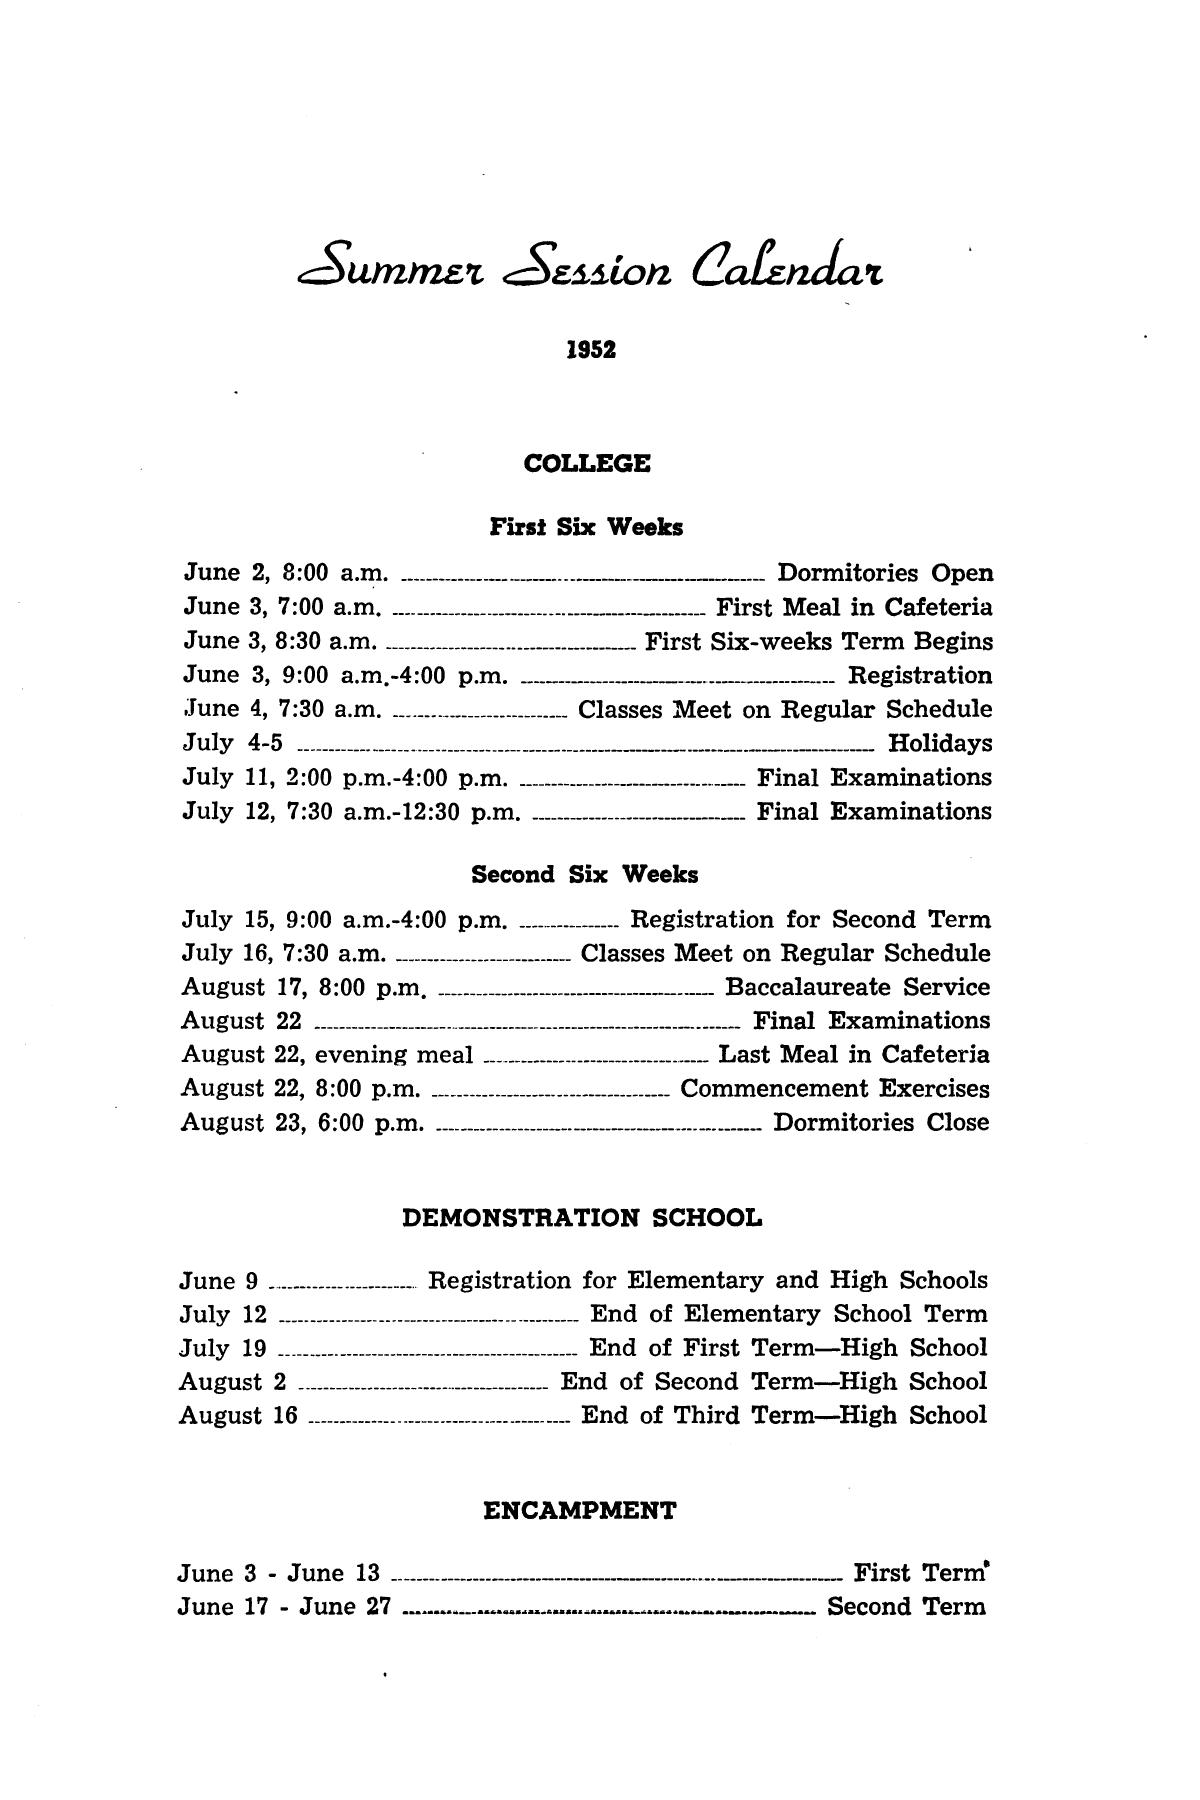 Catalog of Abilene Christian College, 1952
                                                
                                                    1
                                                